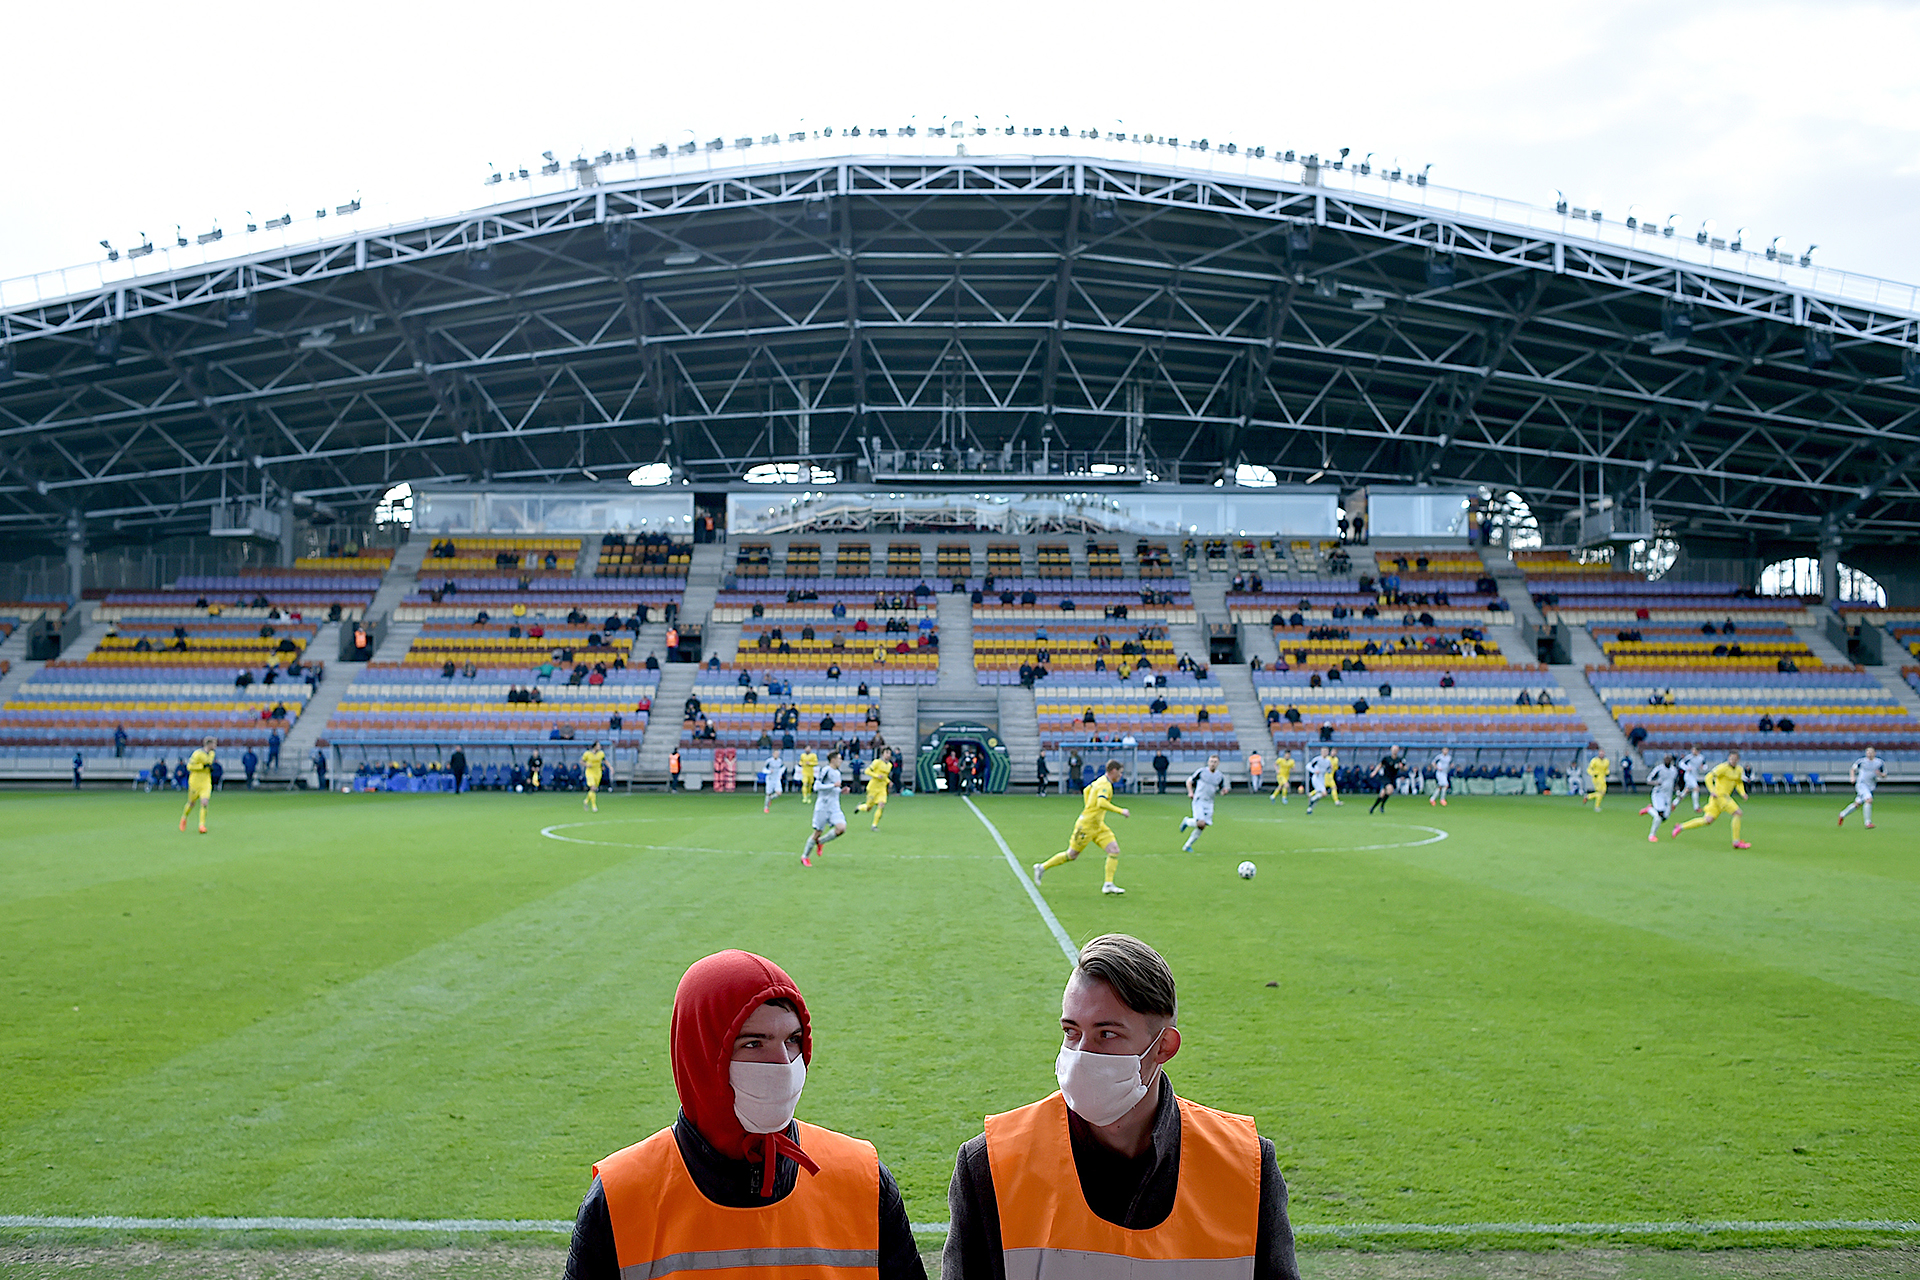 ウォッカとサウナでコロナは予防できる 世界から注目を浴びたベラルーシリーグの 真実 Footballista フットボリスタ